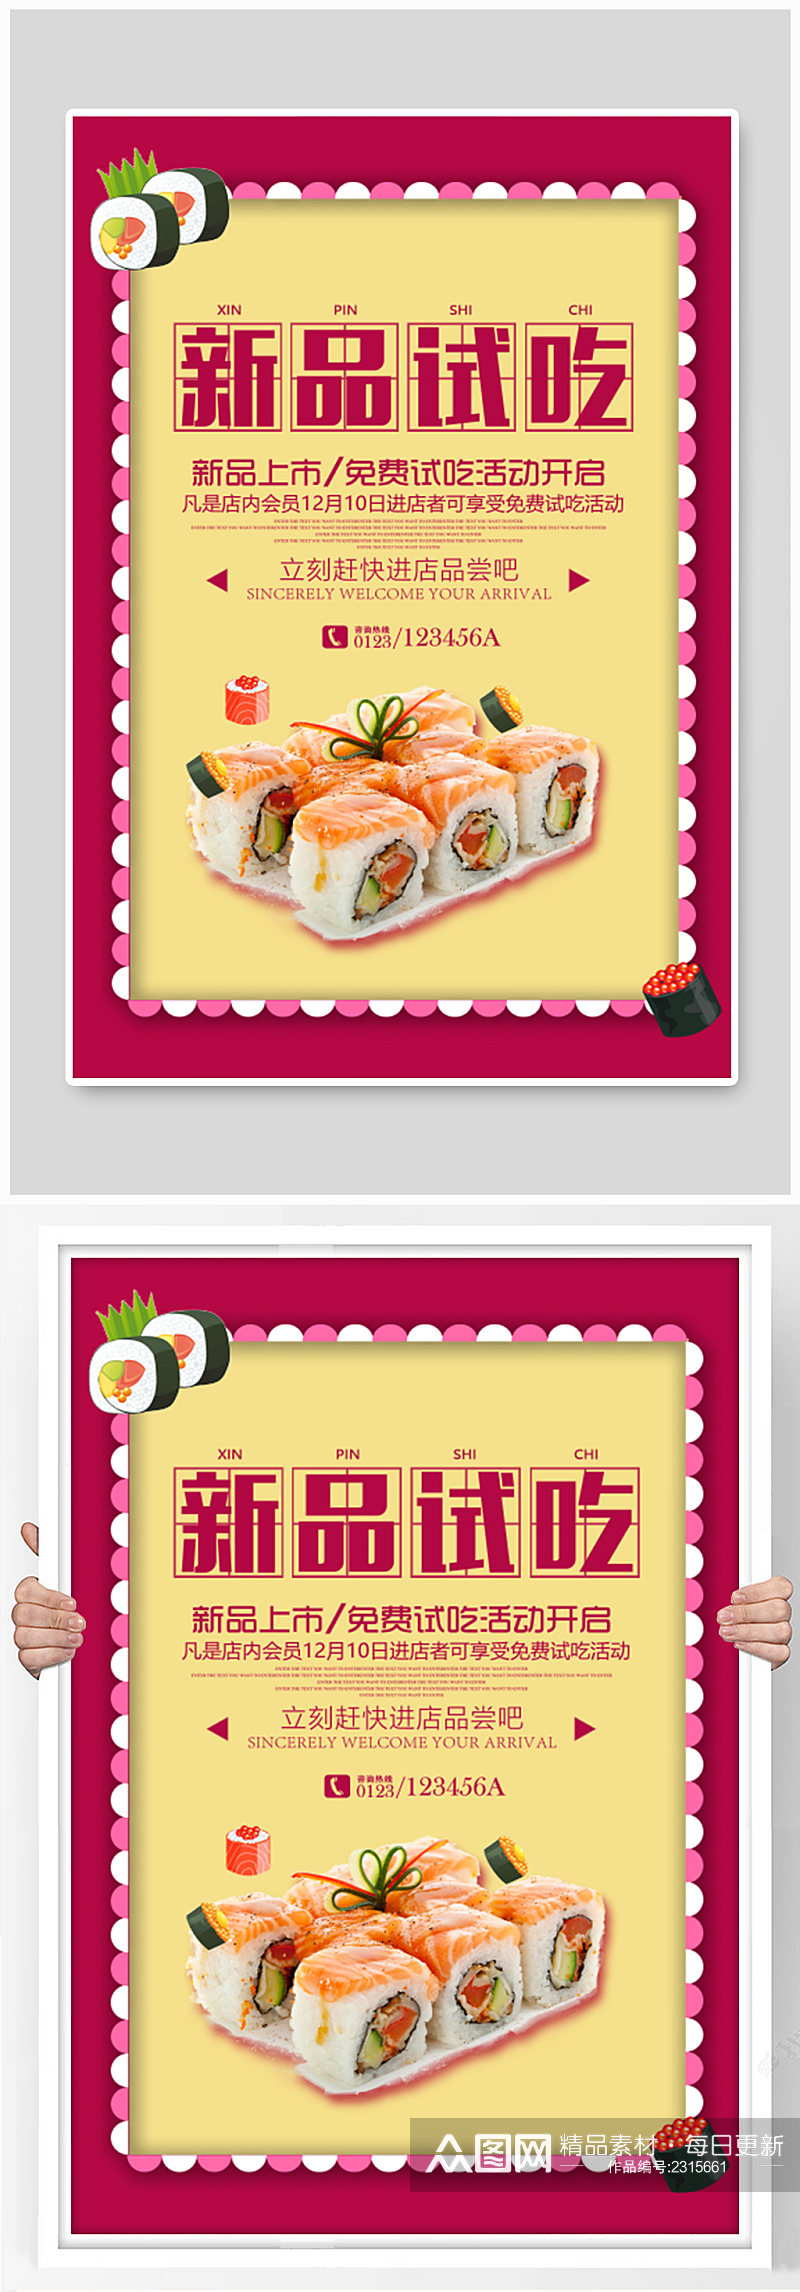 寿司甜品店试吃宣传广告素材